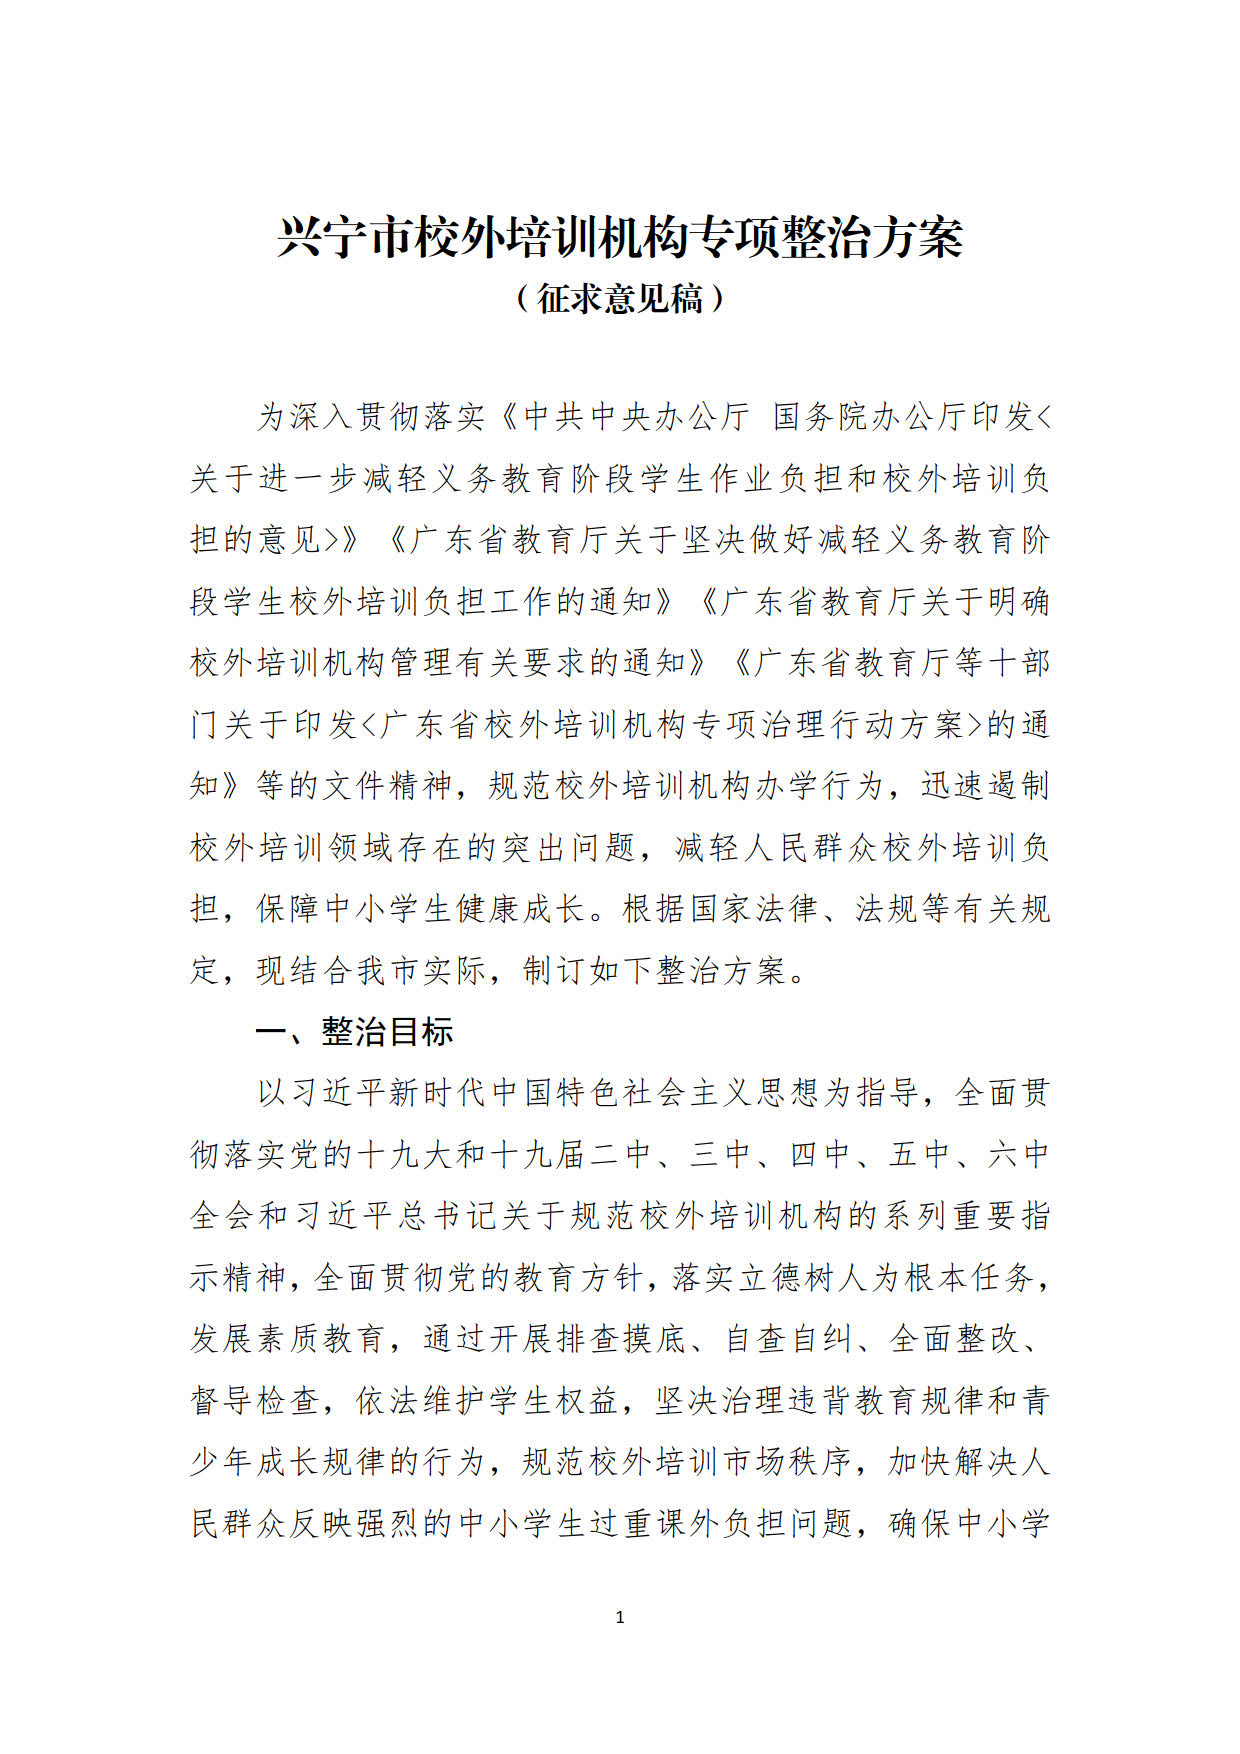 （20211213）兴宁市校外培训机构专项整治方案（征求意见稿）_1.jpg